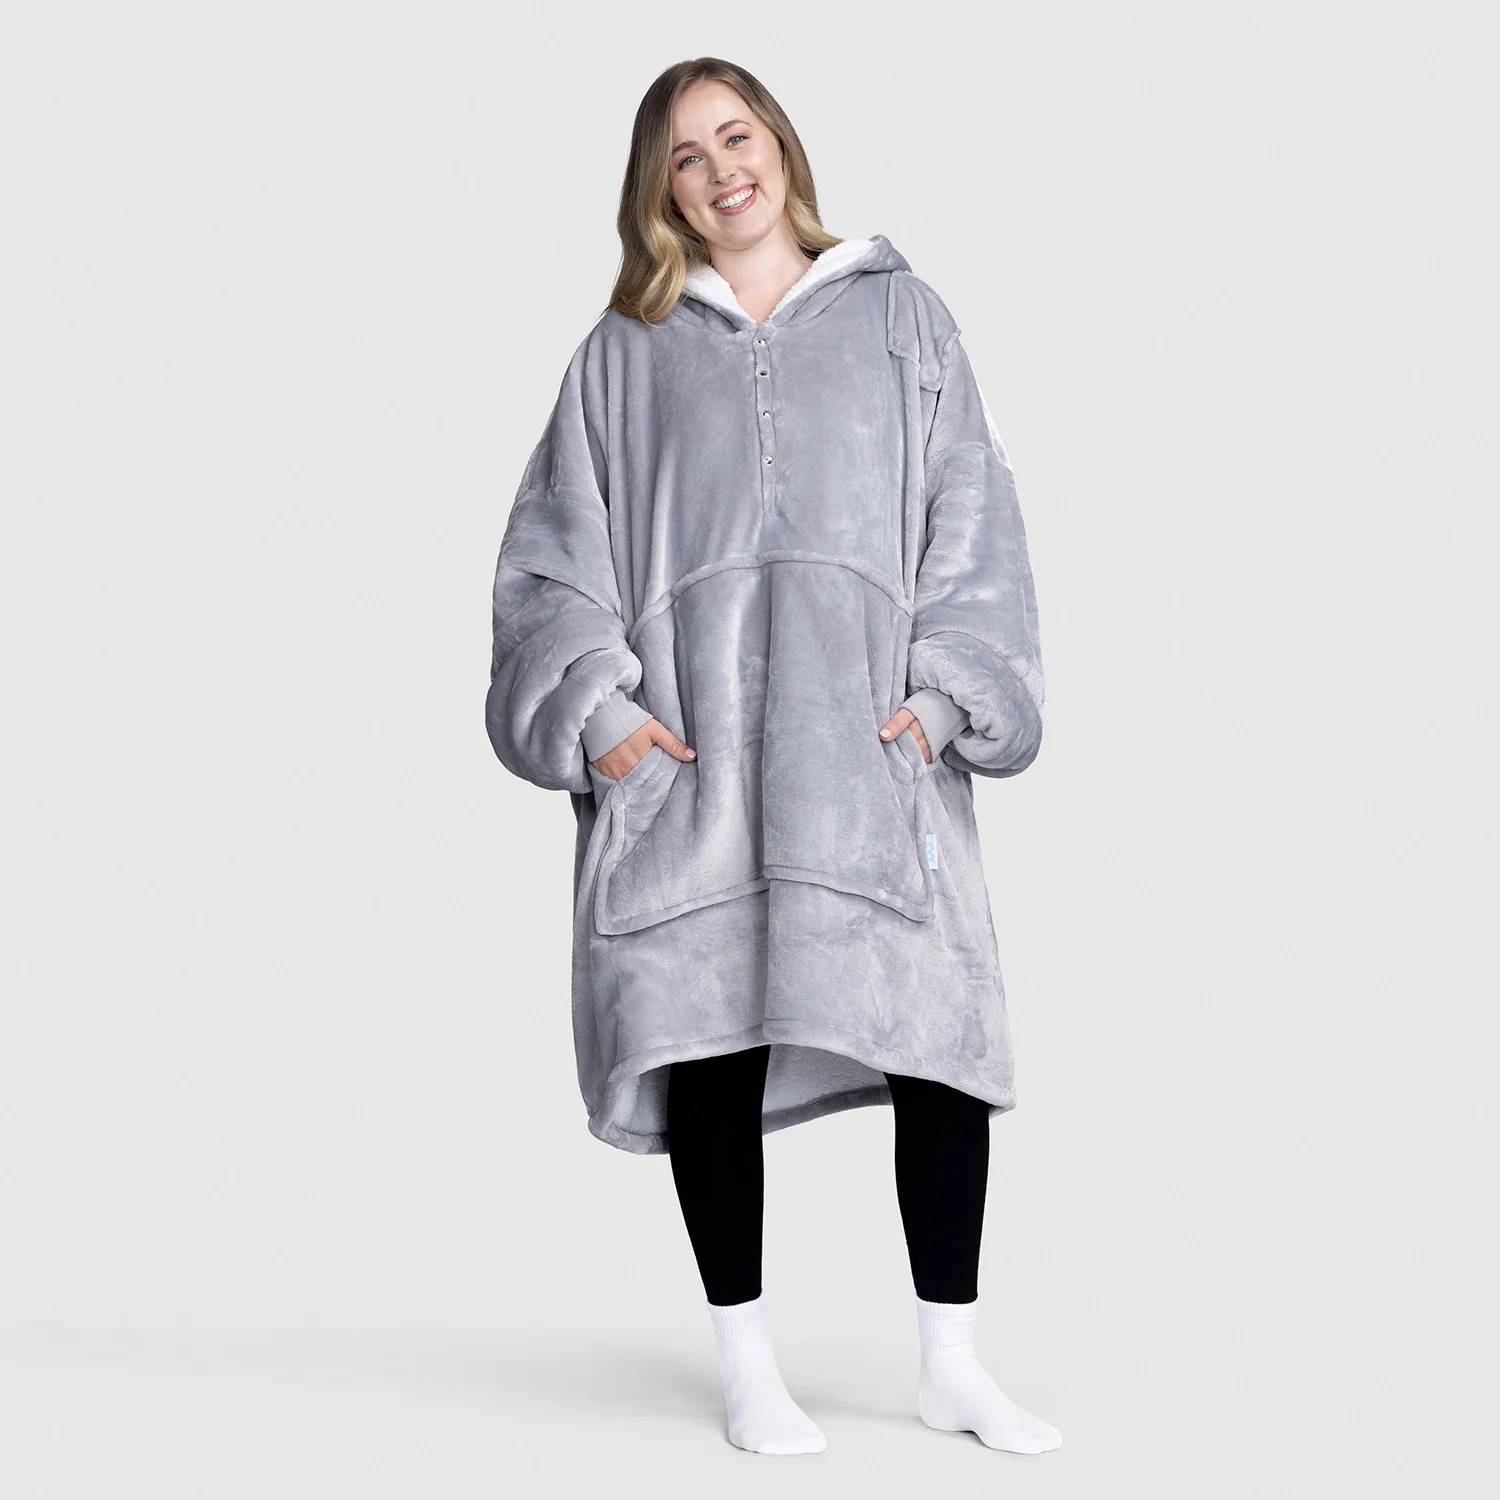 Oodie Grey Weighted Blanket Bundle – The Oodie UK